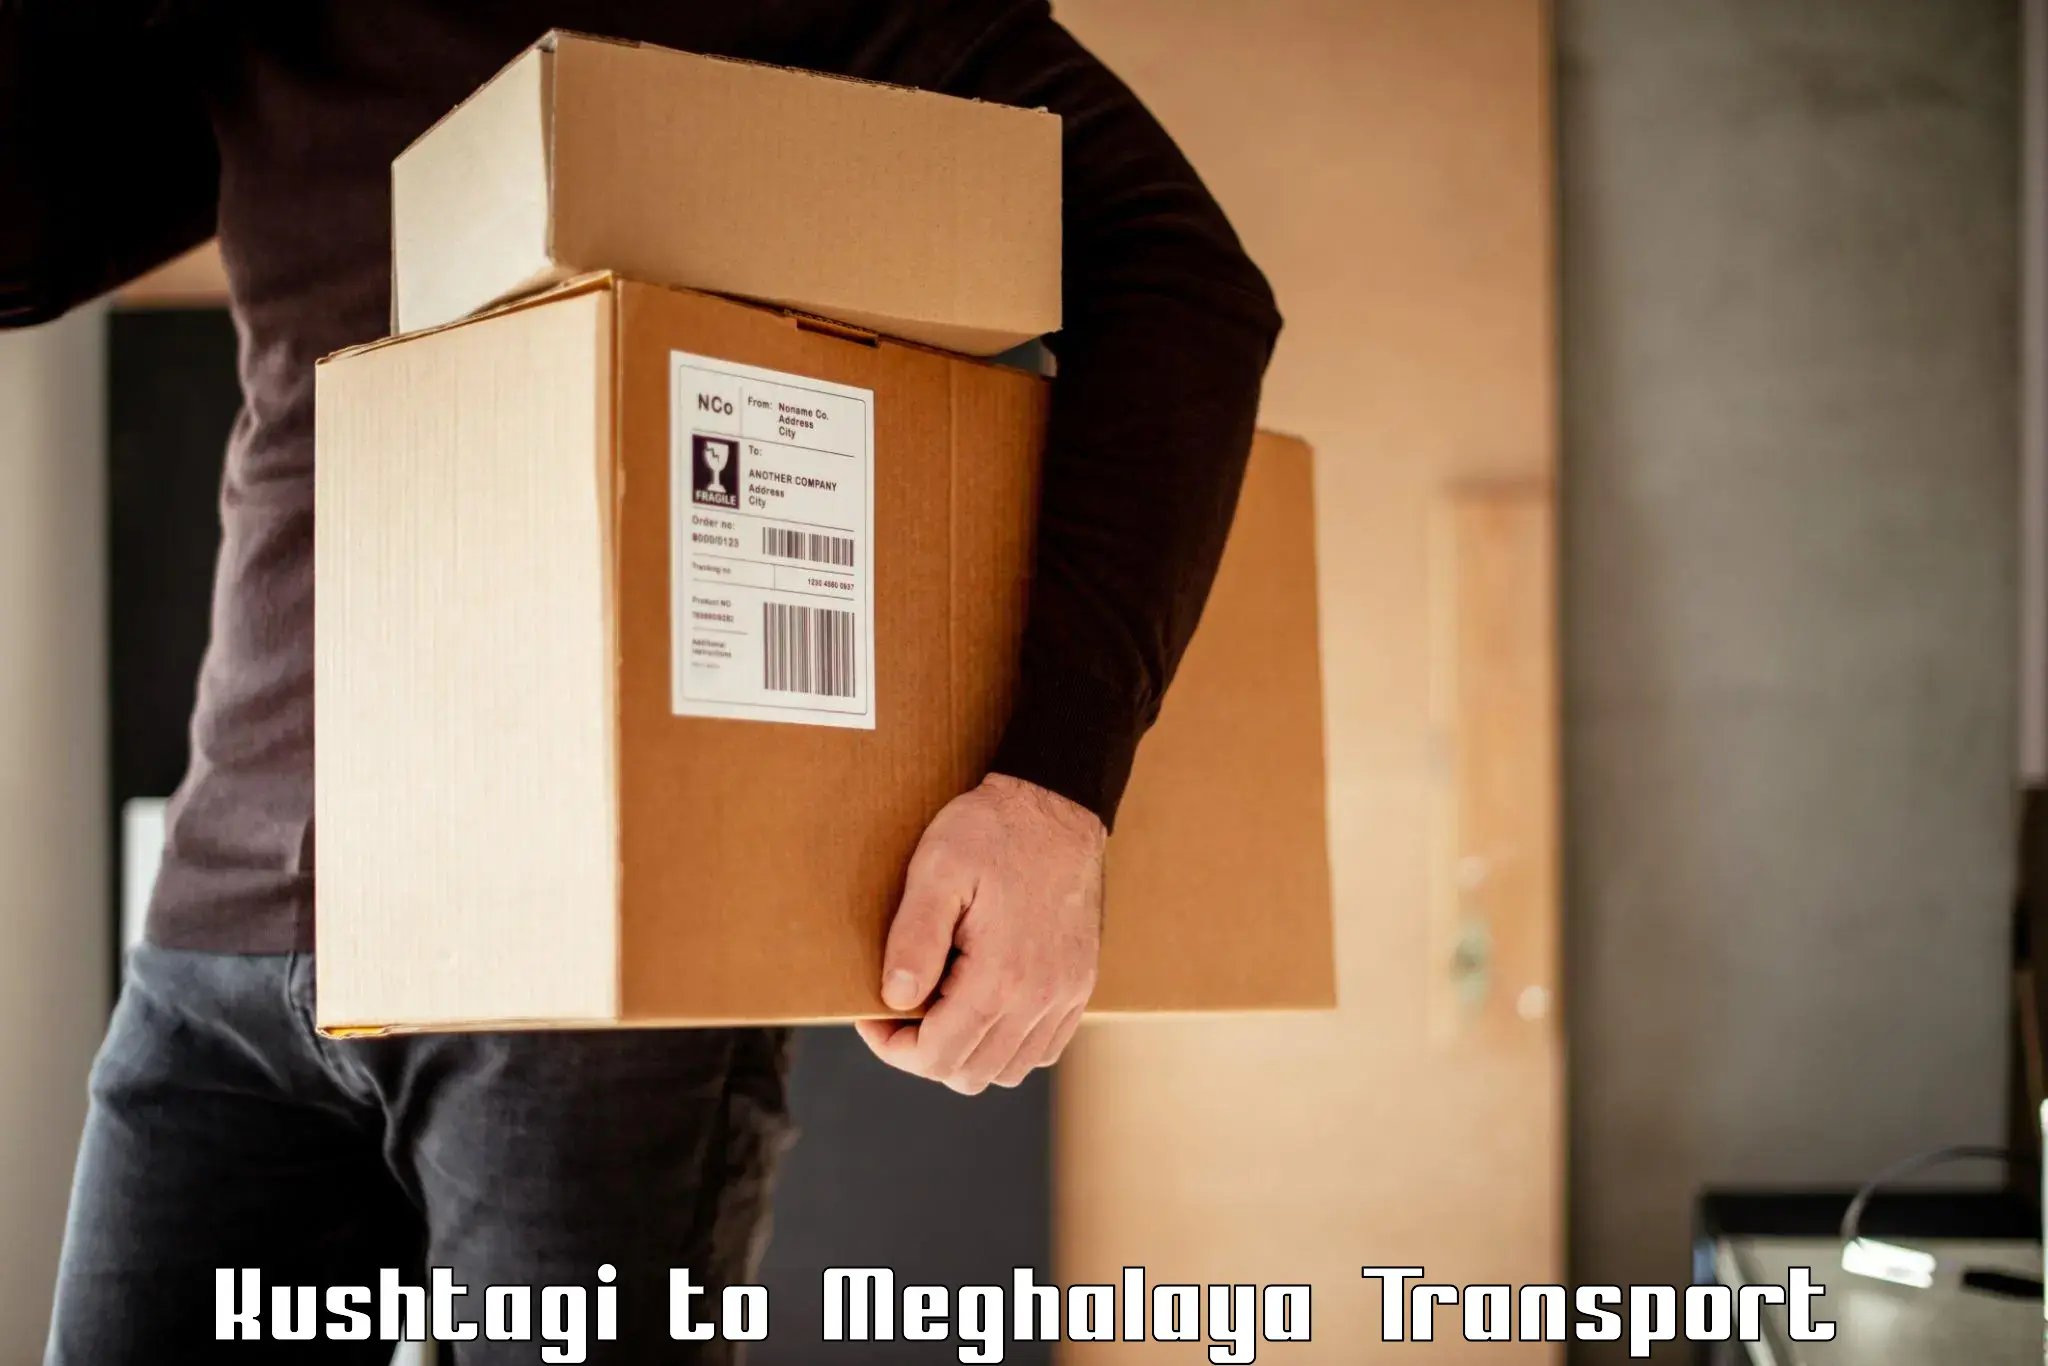 Online transport booking Kushtagi to NIT Meghalaya